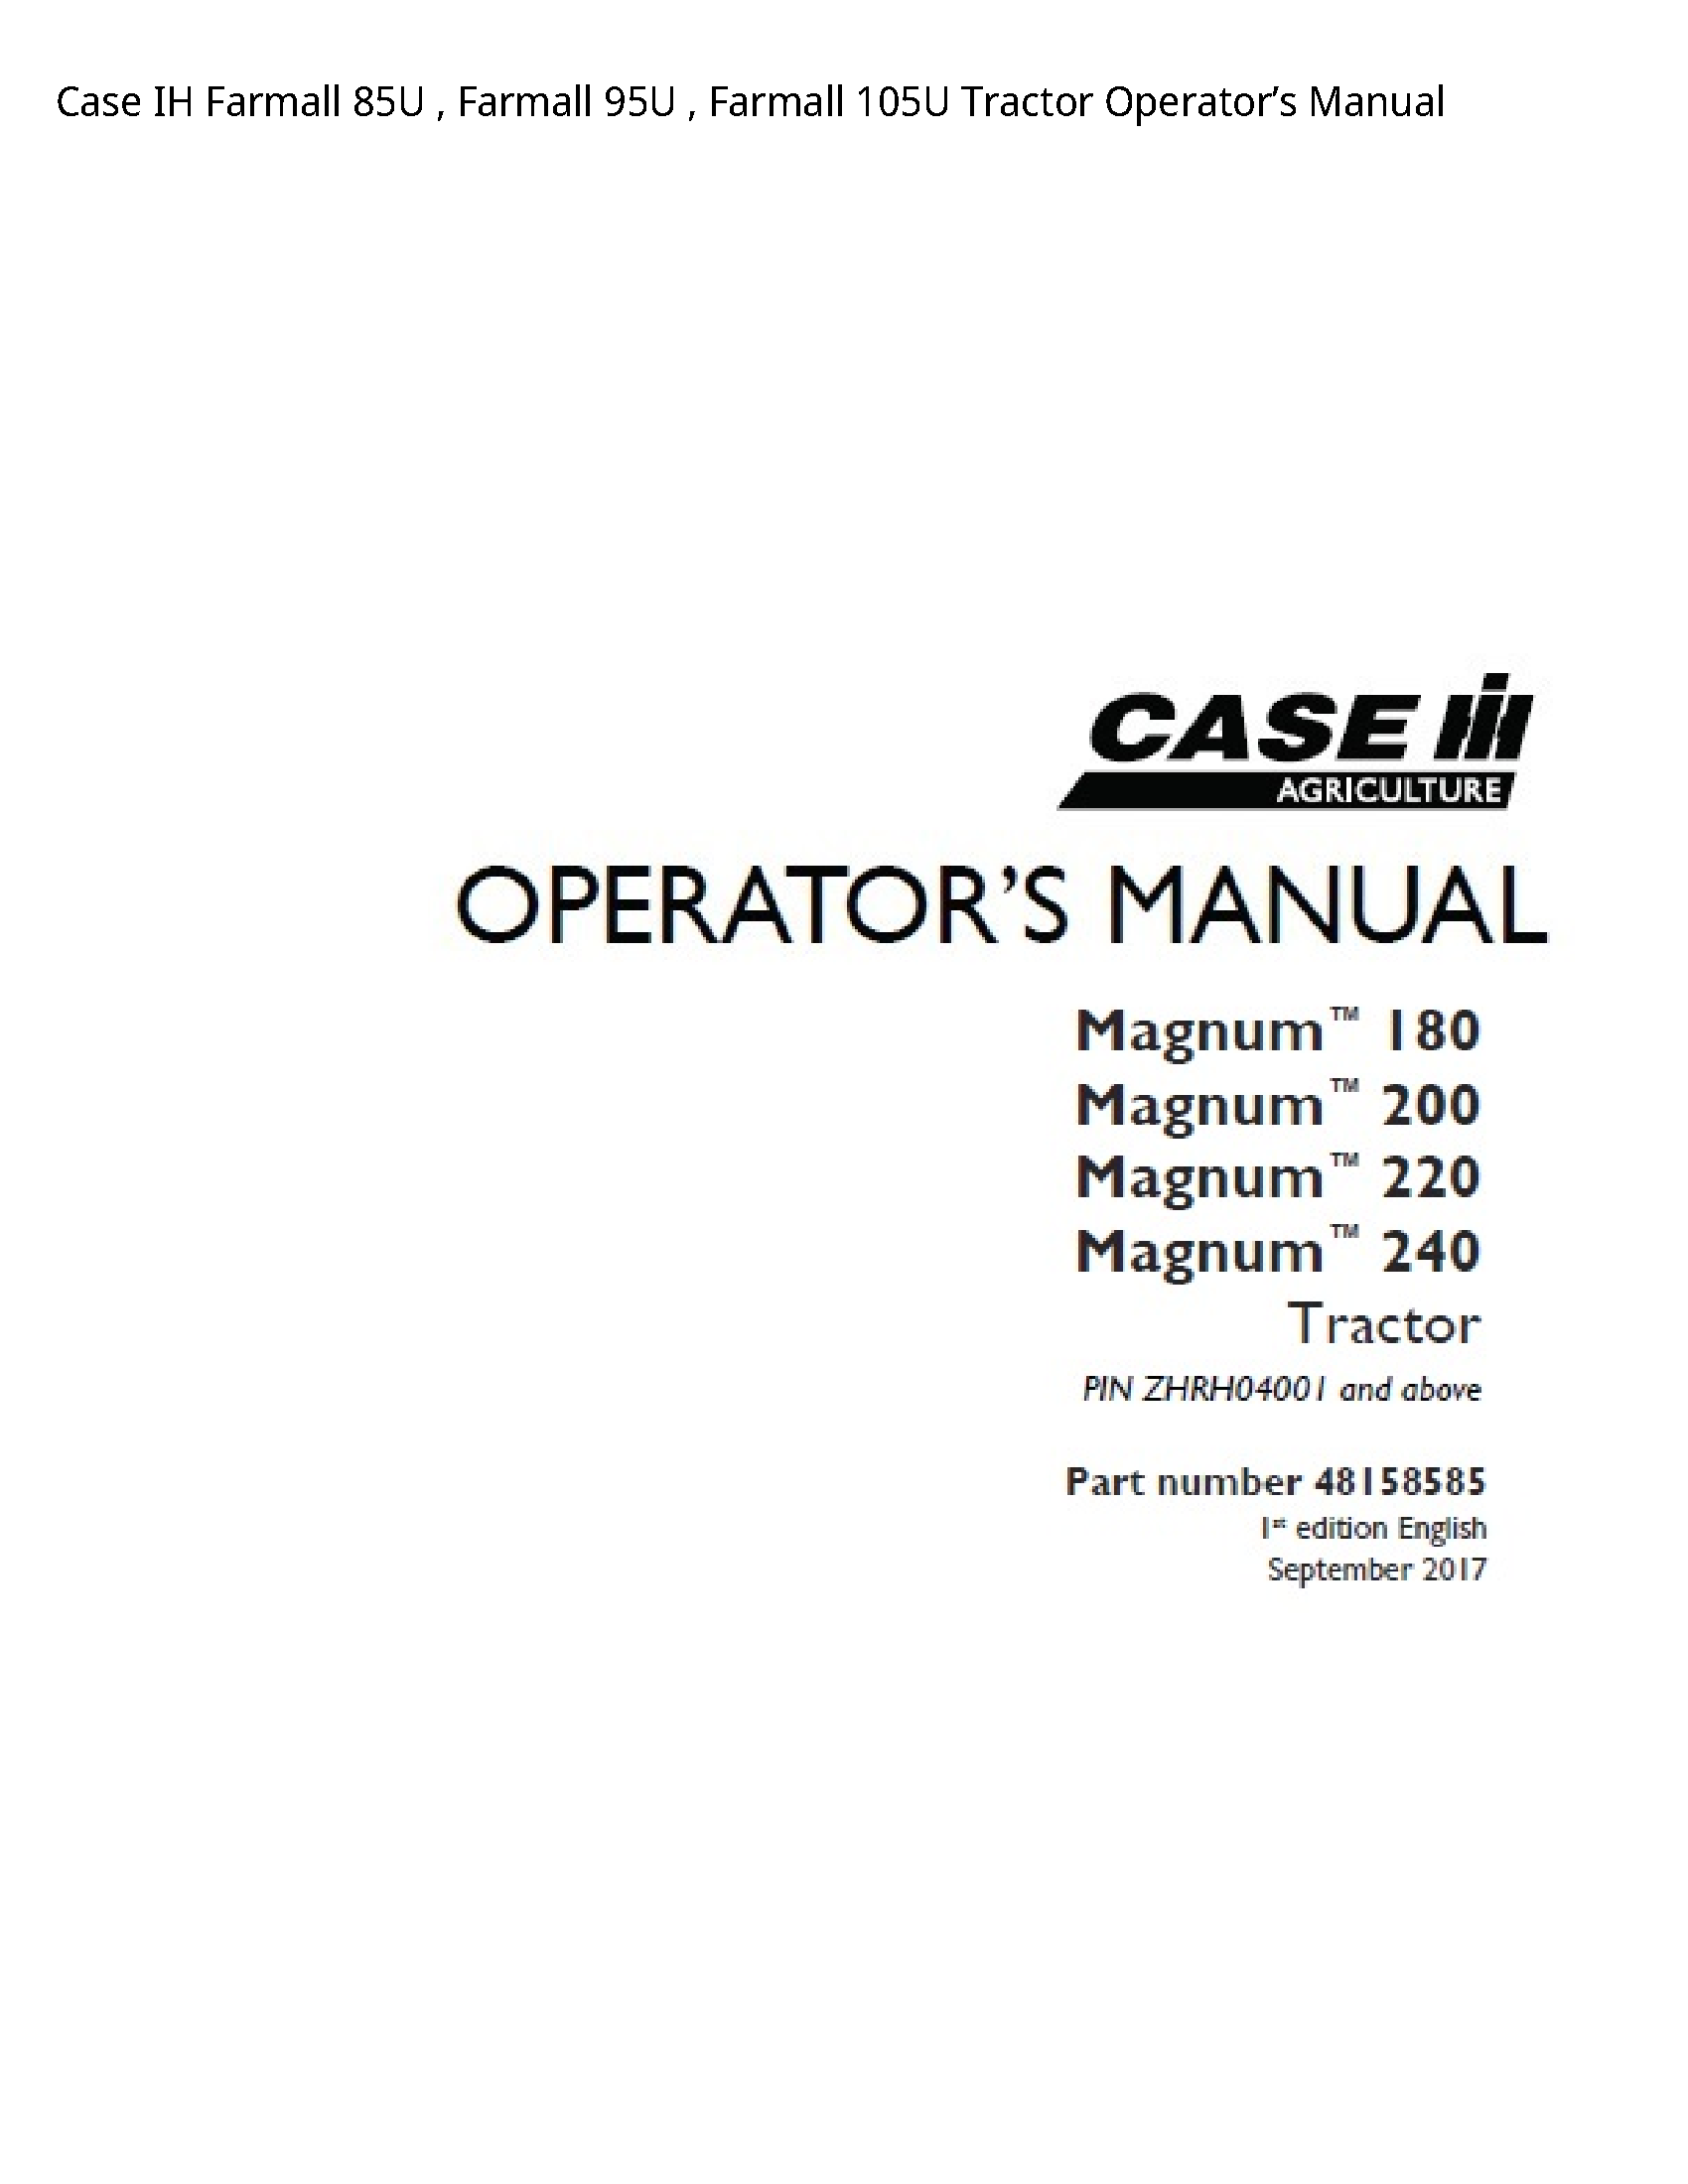 Case/Case IH 85U IH Farmall Farmall Farmall Tractor Operator’s manual